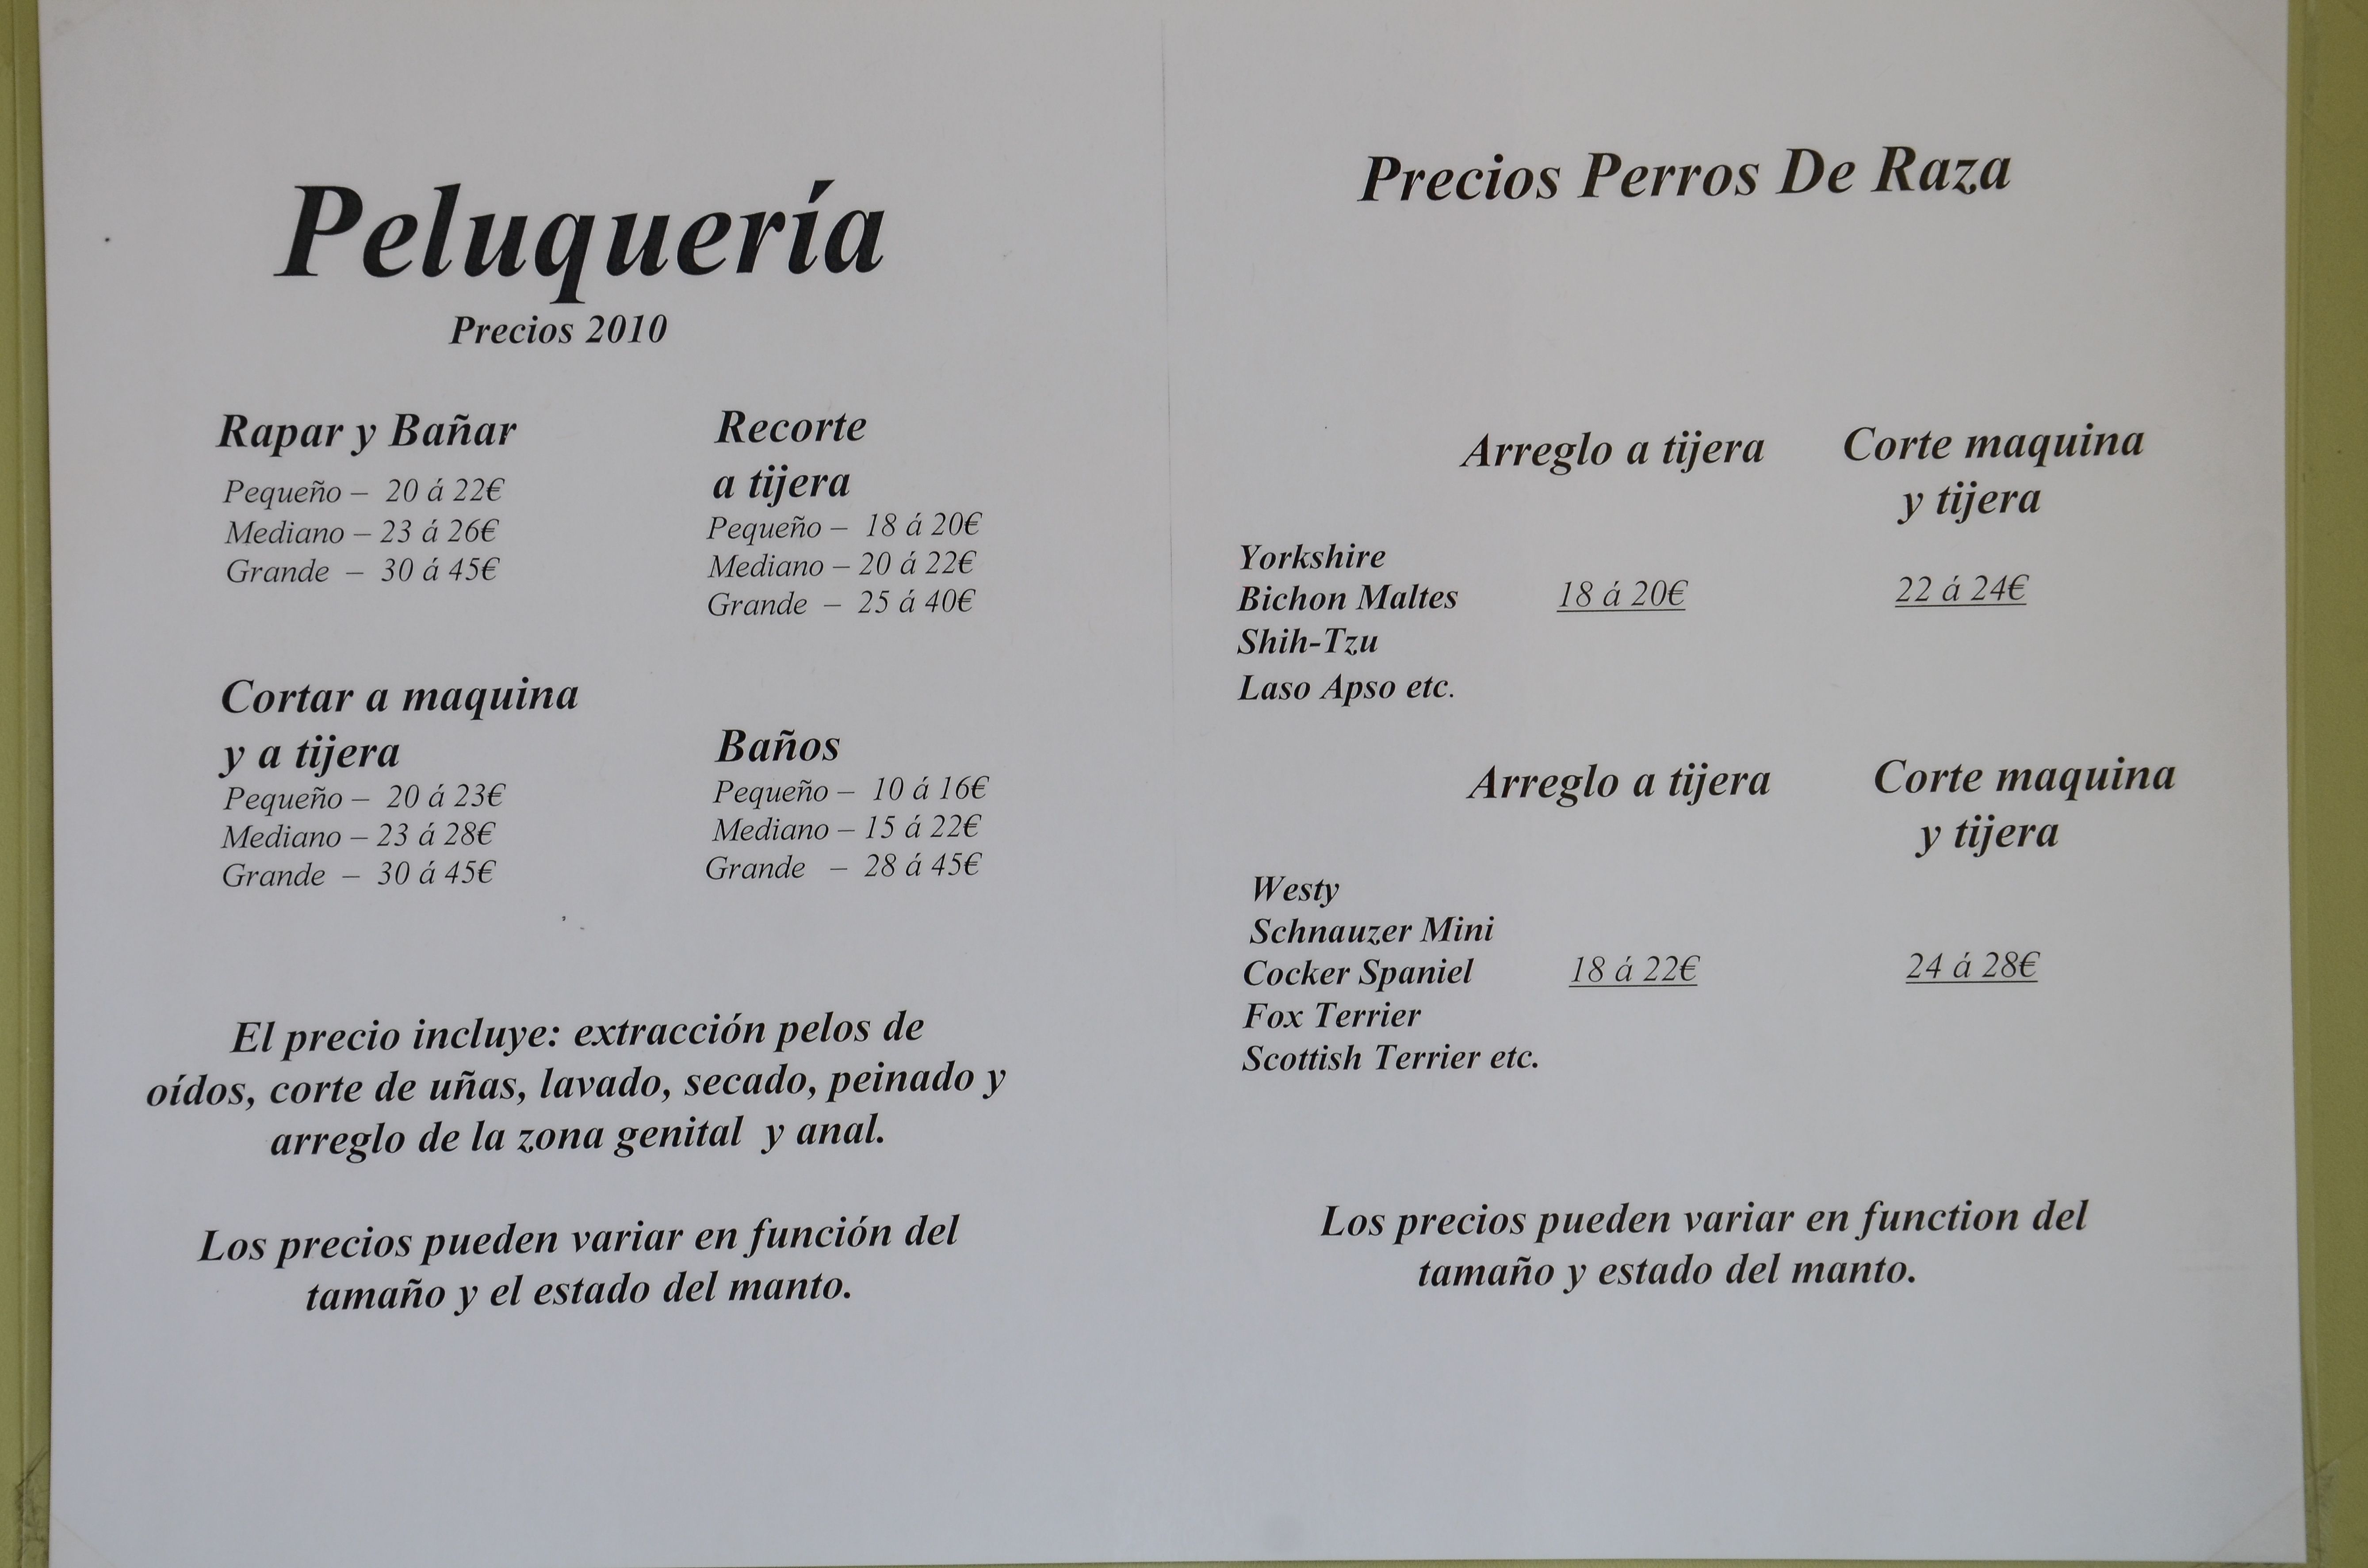 Foto 15 de Veterinarios en Mazarrón | Clínica principal Veterinaria Puerto Mazarrón